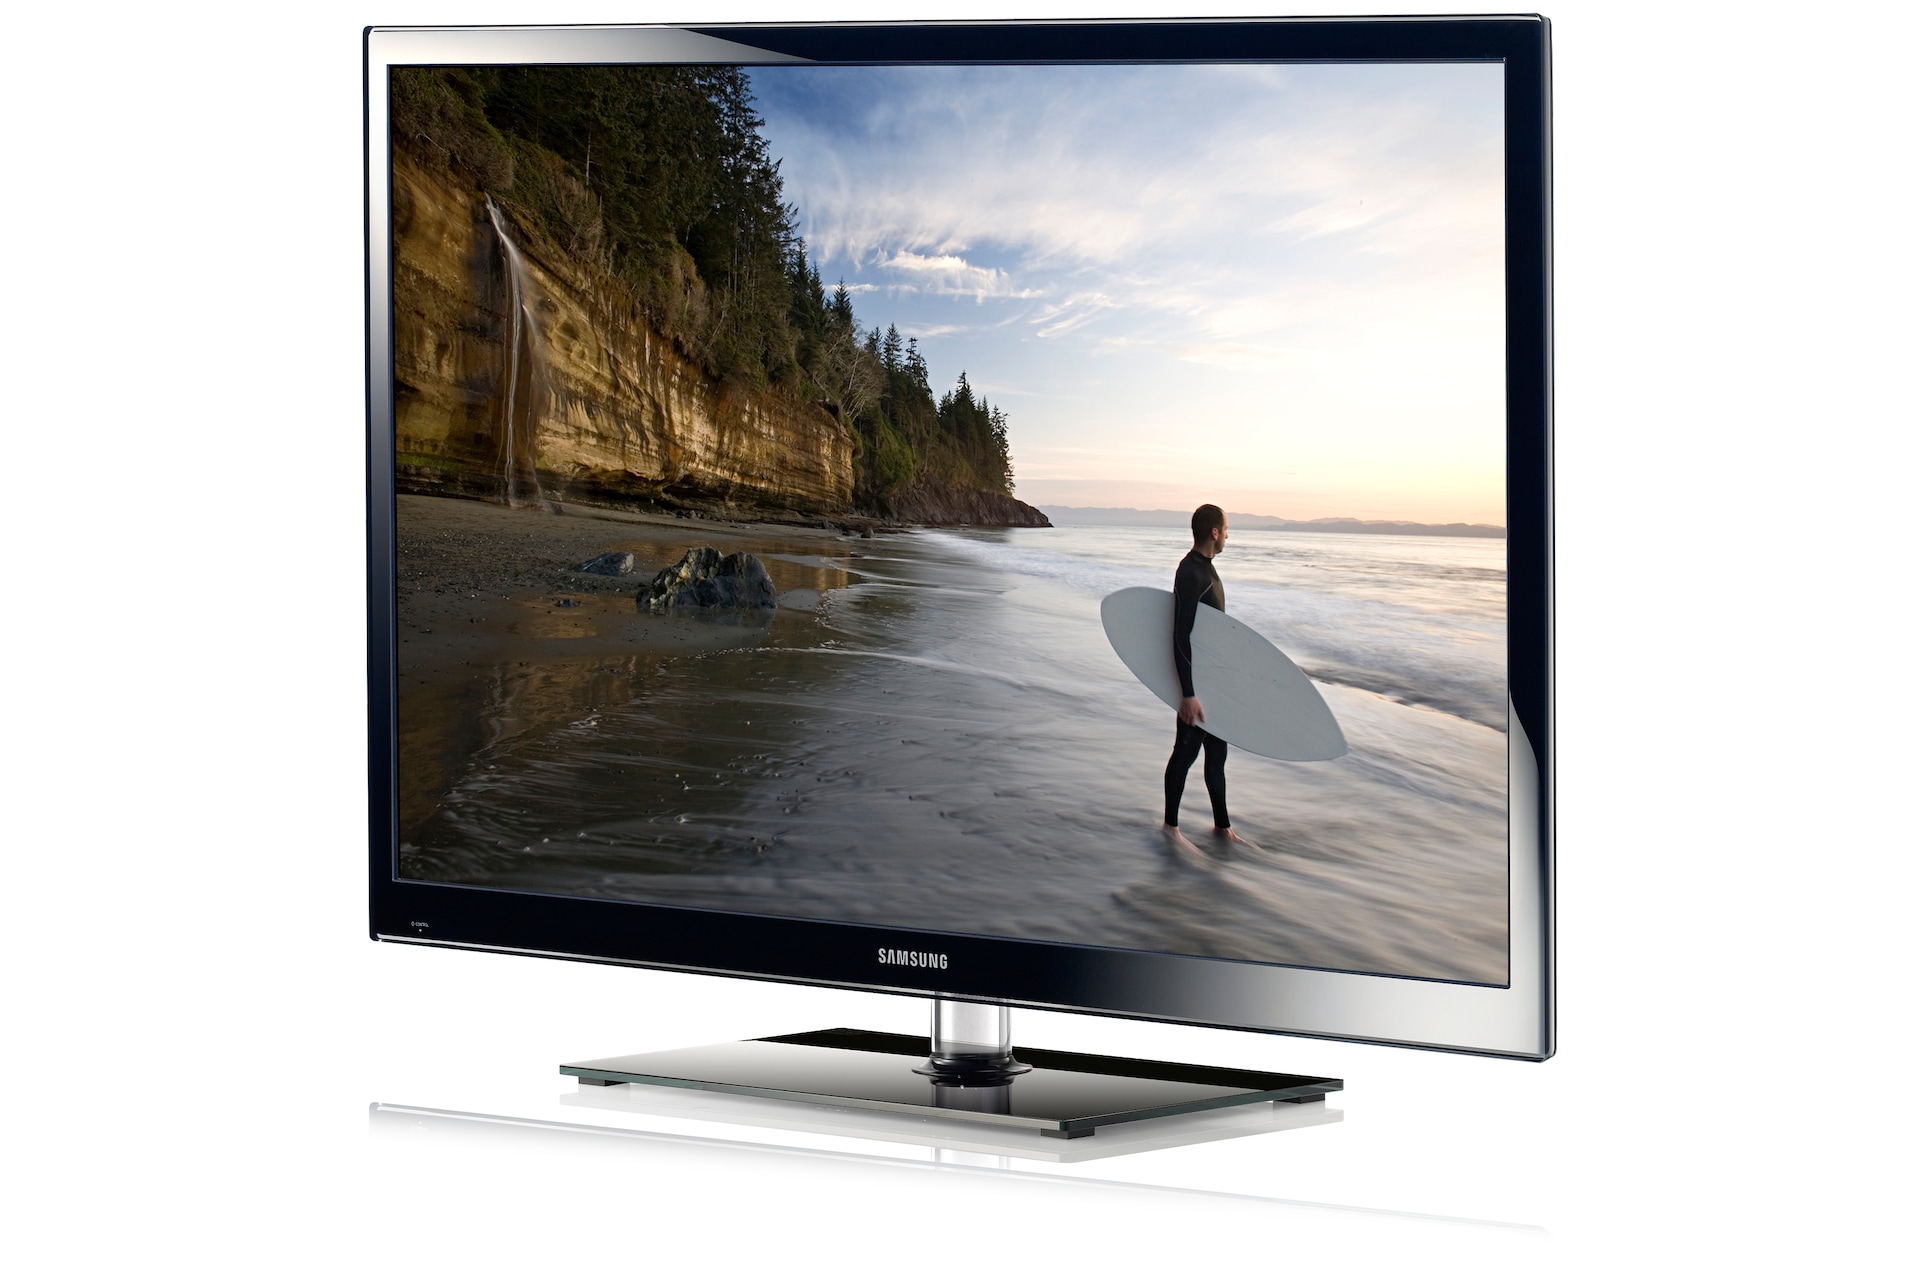 Куплю телевизор в минске цена. Телевизор Samsung ps51e450 51". Samsung Plasma 43e450. Samsung ps43e490 Plasma. Телевизор Samsung ps43e450a1w.